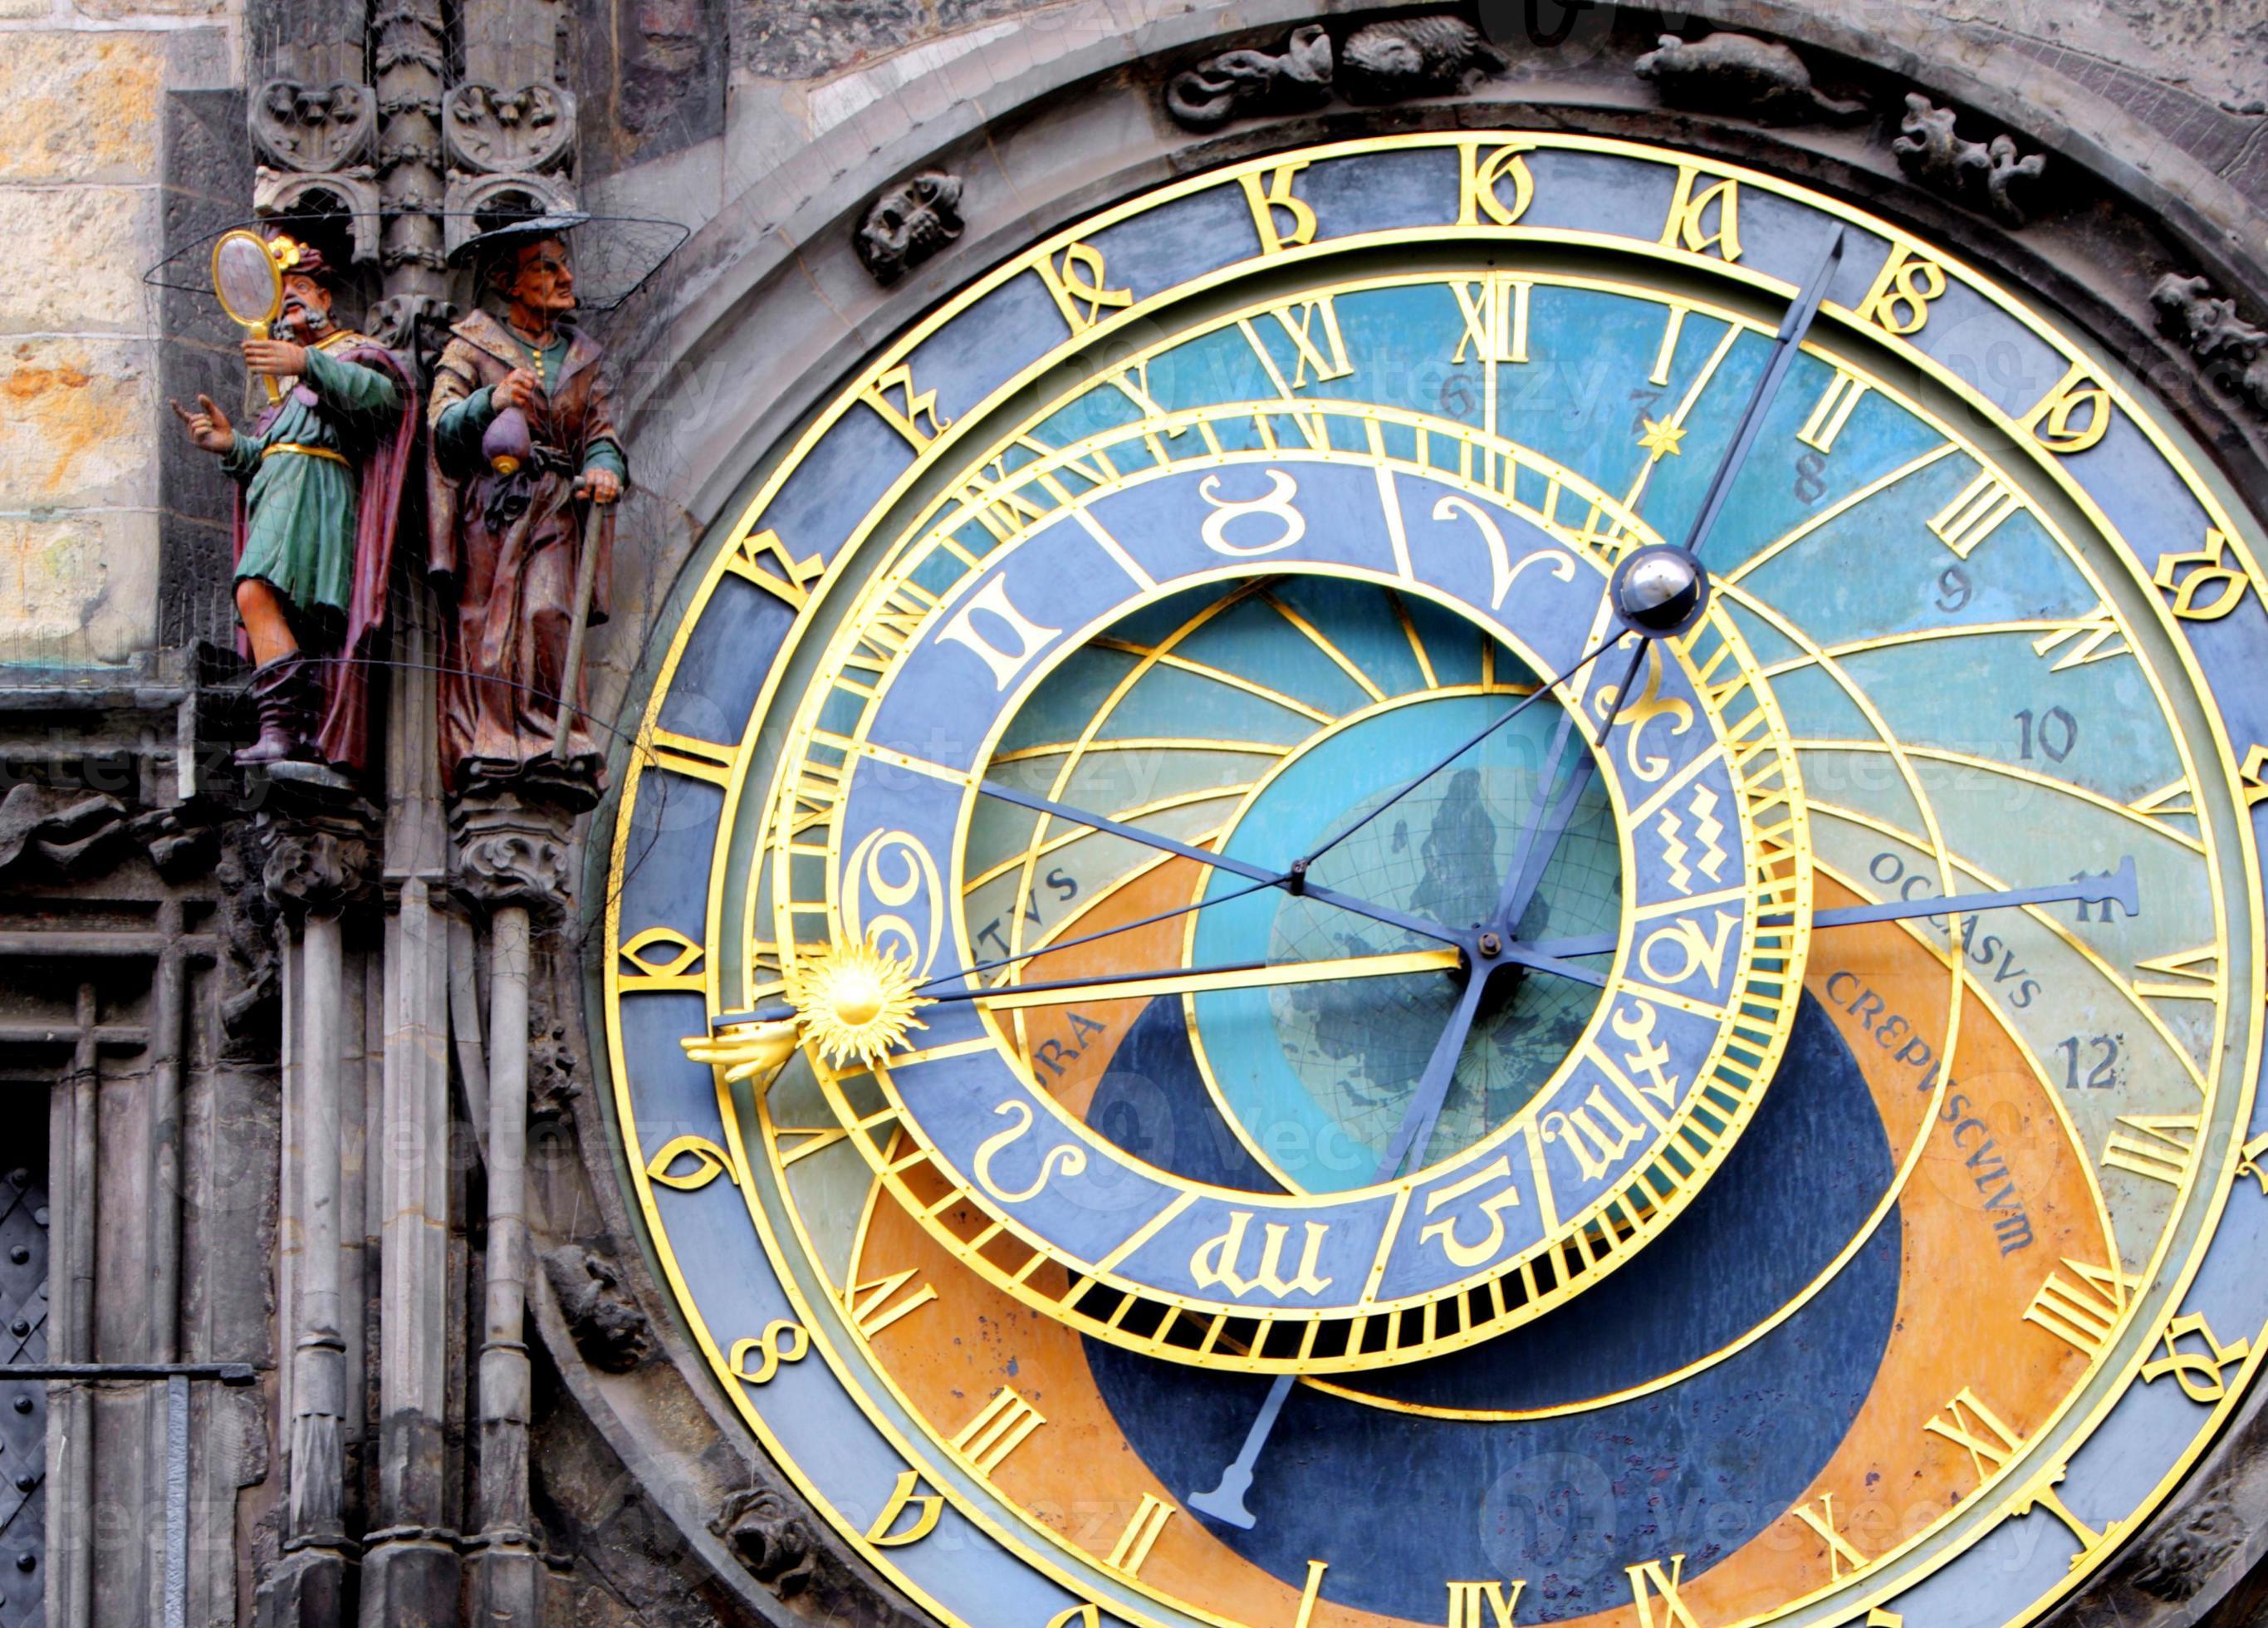 pragas astronomiska klocka (orloj) i gamla stan i Prag foto